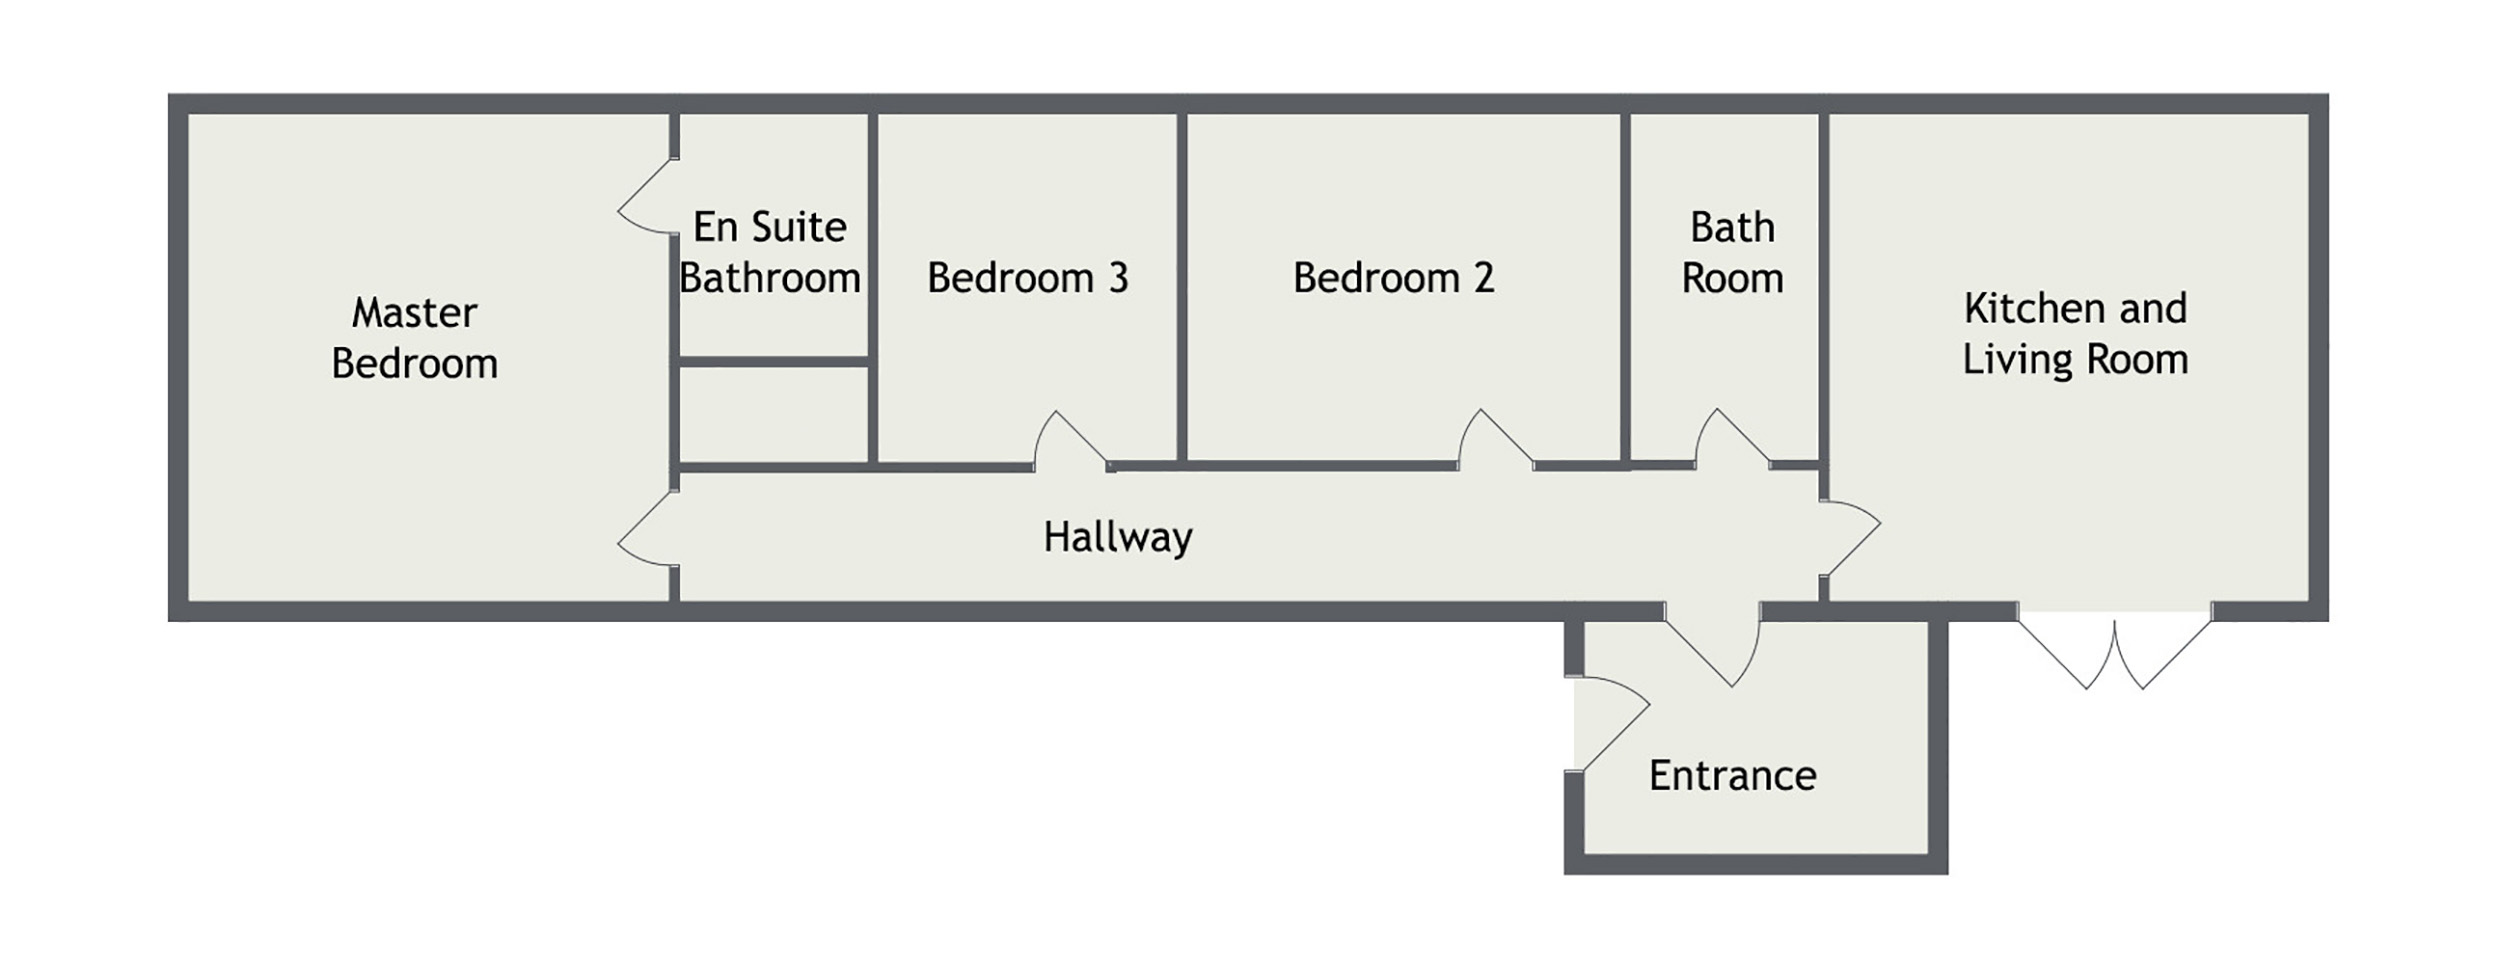 Drummondreach floor plan